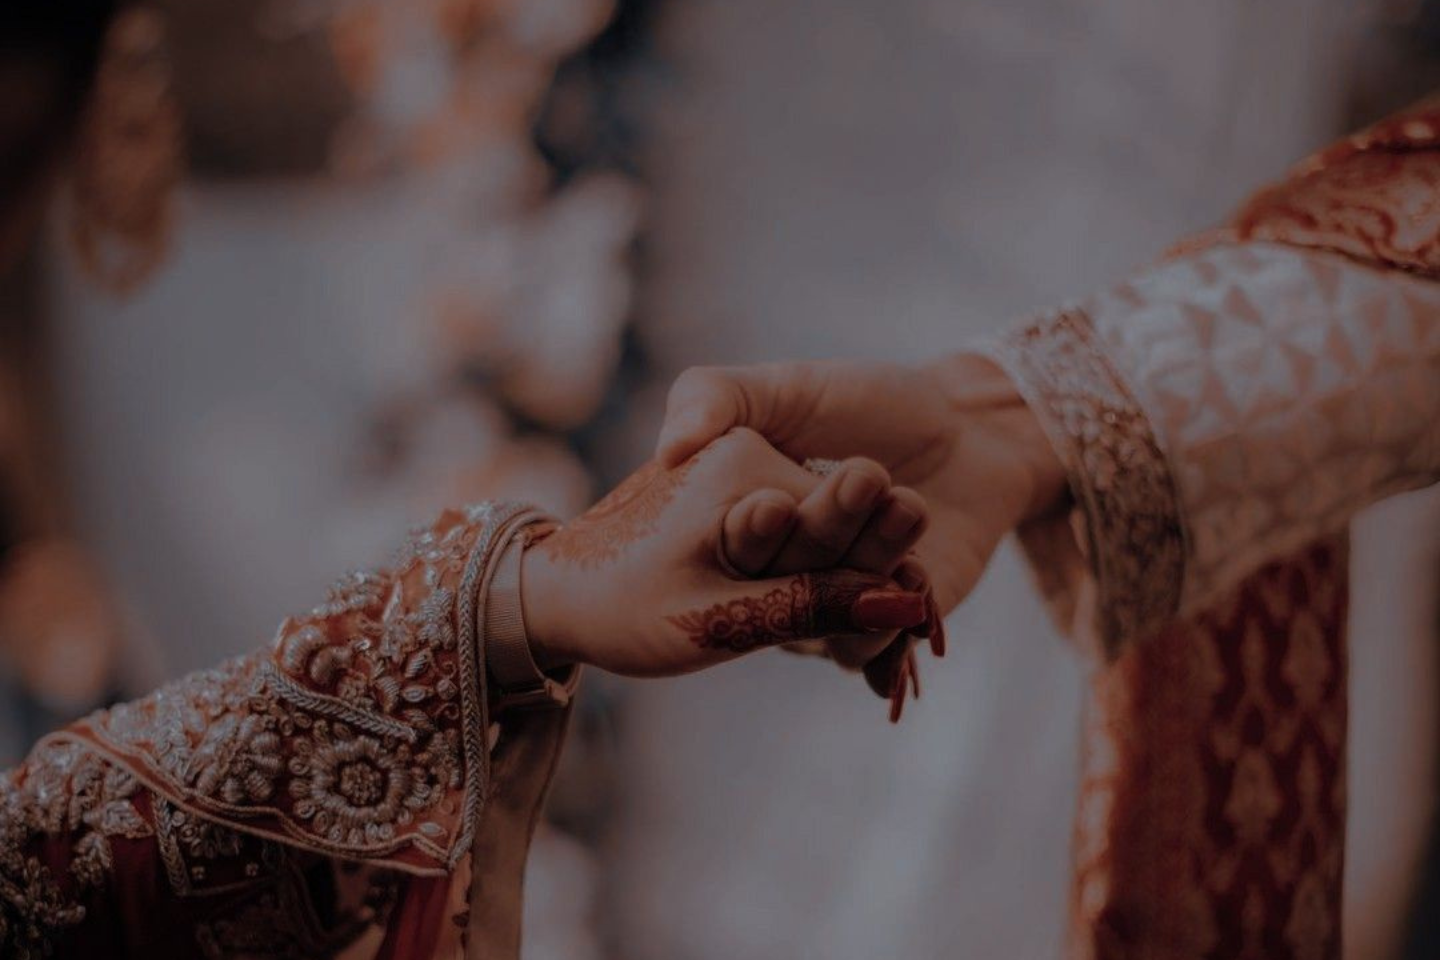 Bhumi & Rohan Ring ceremony @suchitphotography Mo 9898357950 #ringceremony  #wedding #engagement #indianwedding #ring #indianbride #we... | Instagram